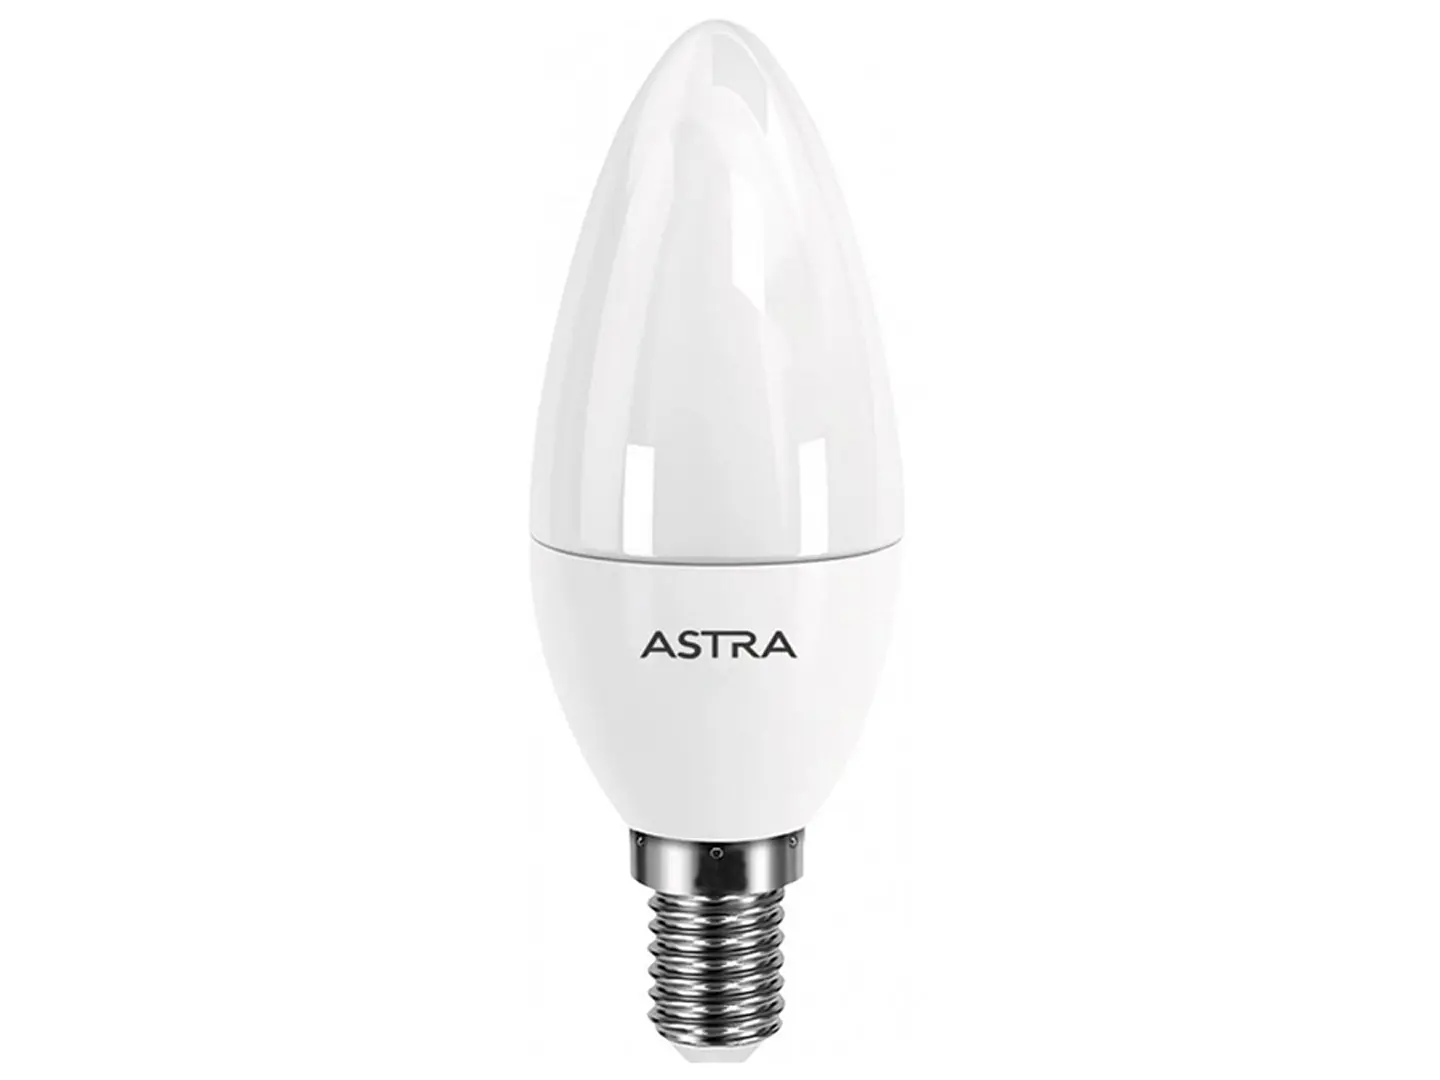 Лампа светодиодная ASTRA C37 5W E14 3000K; Штрихкод 8726353714532; страна происхождения (производства) - Китай